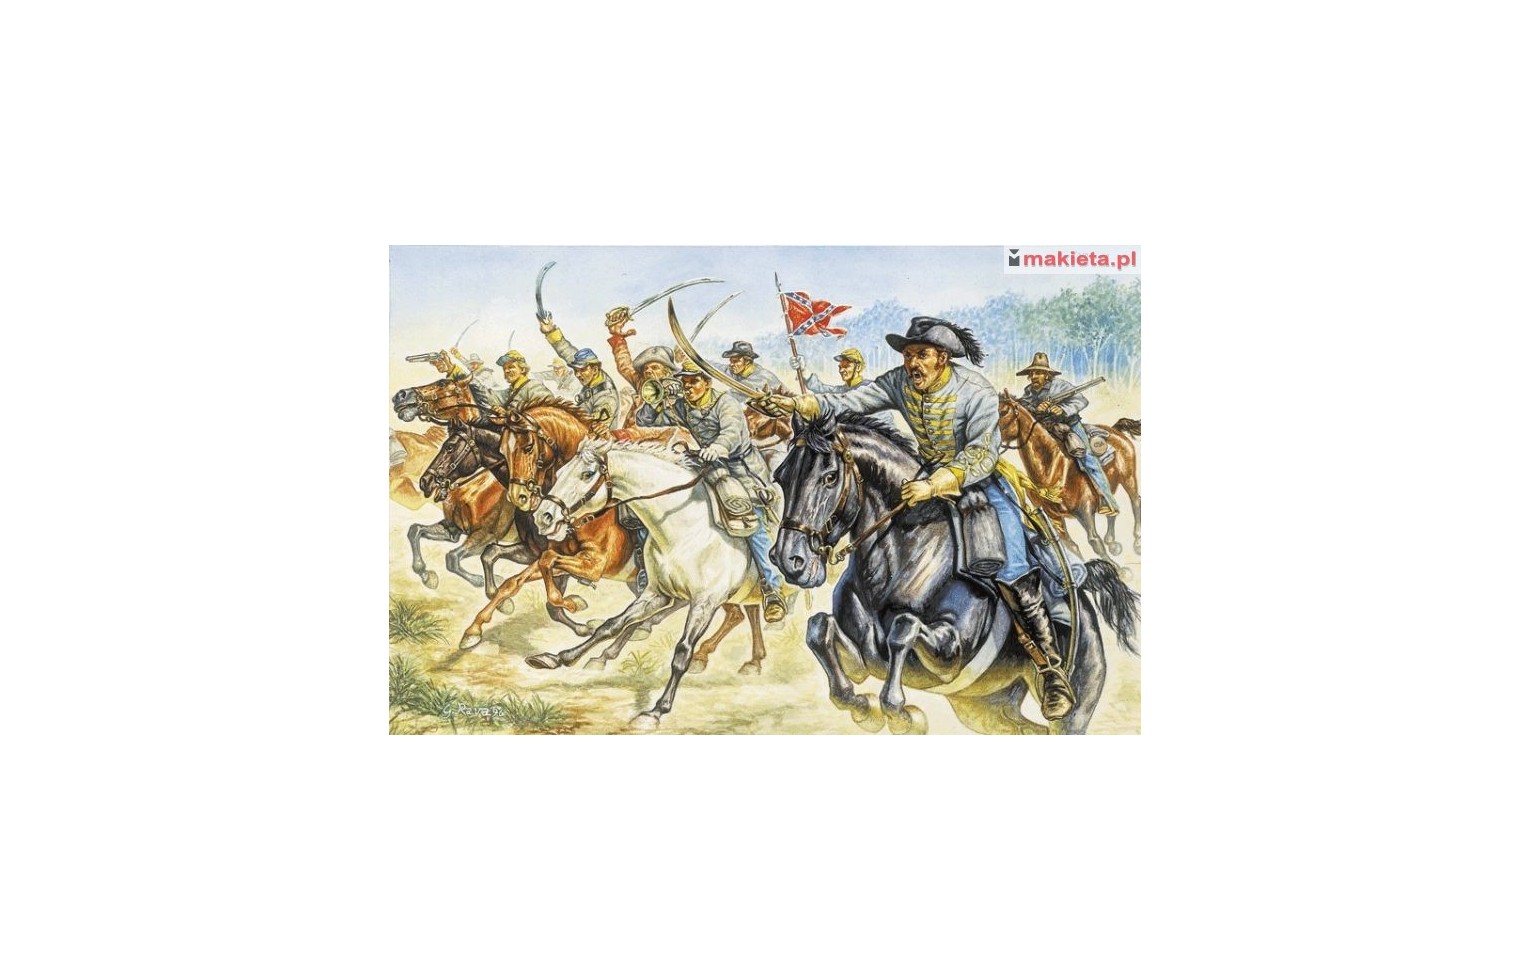 Italeri 6011, Confederate Cavalry, 1:72